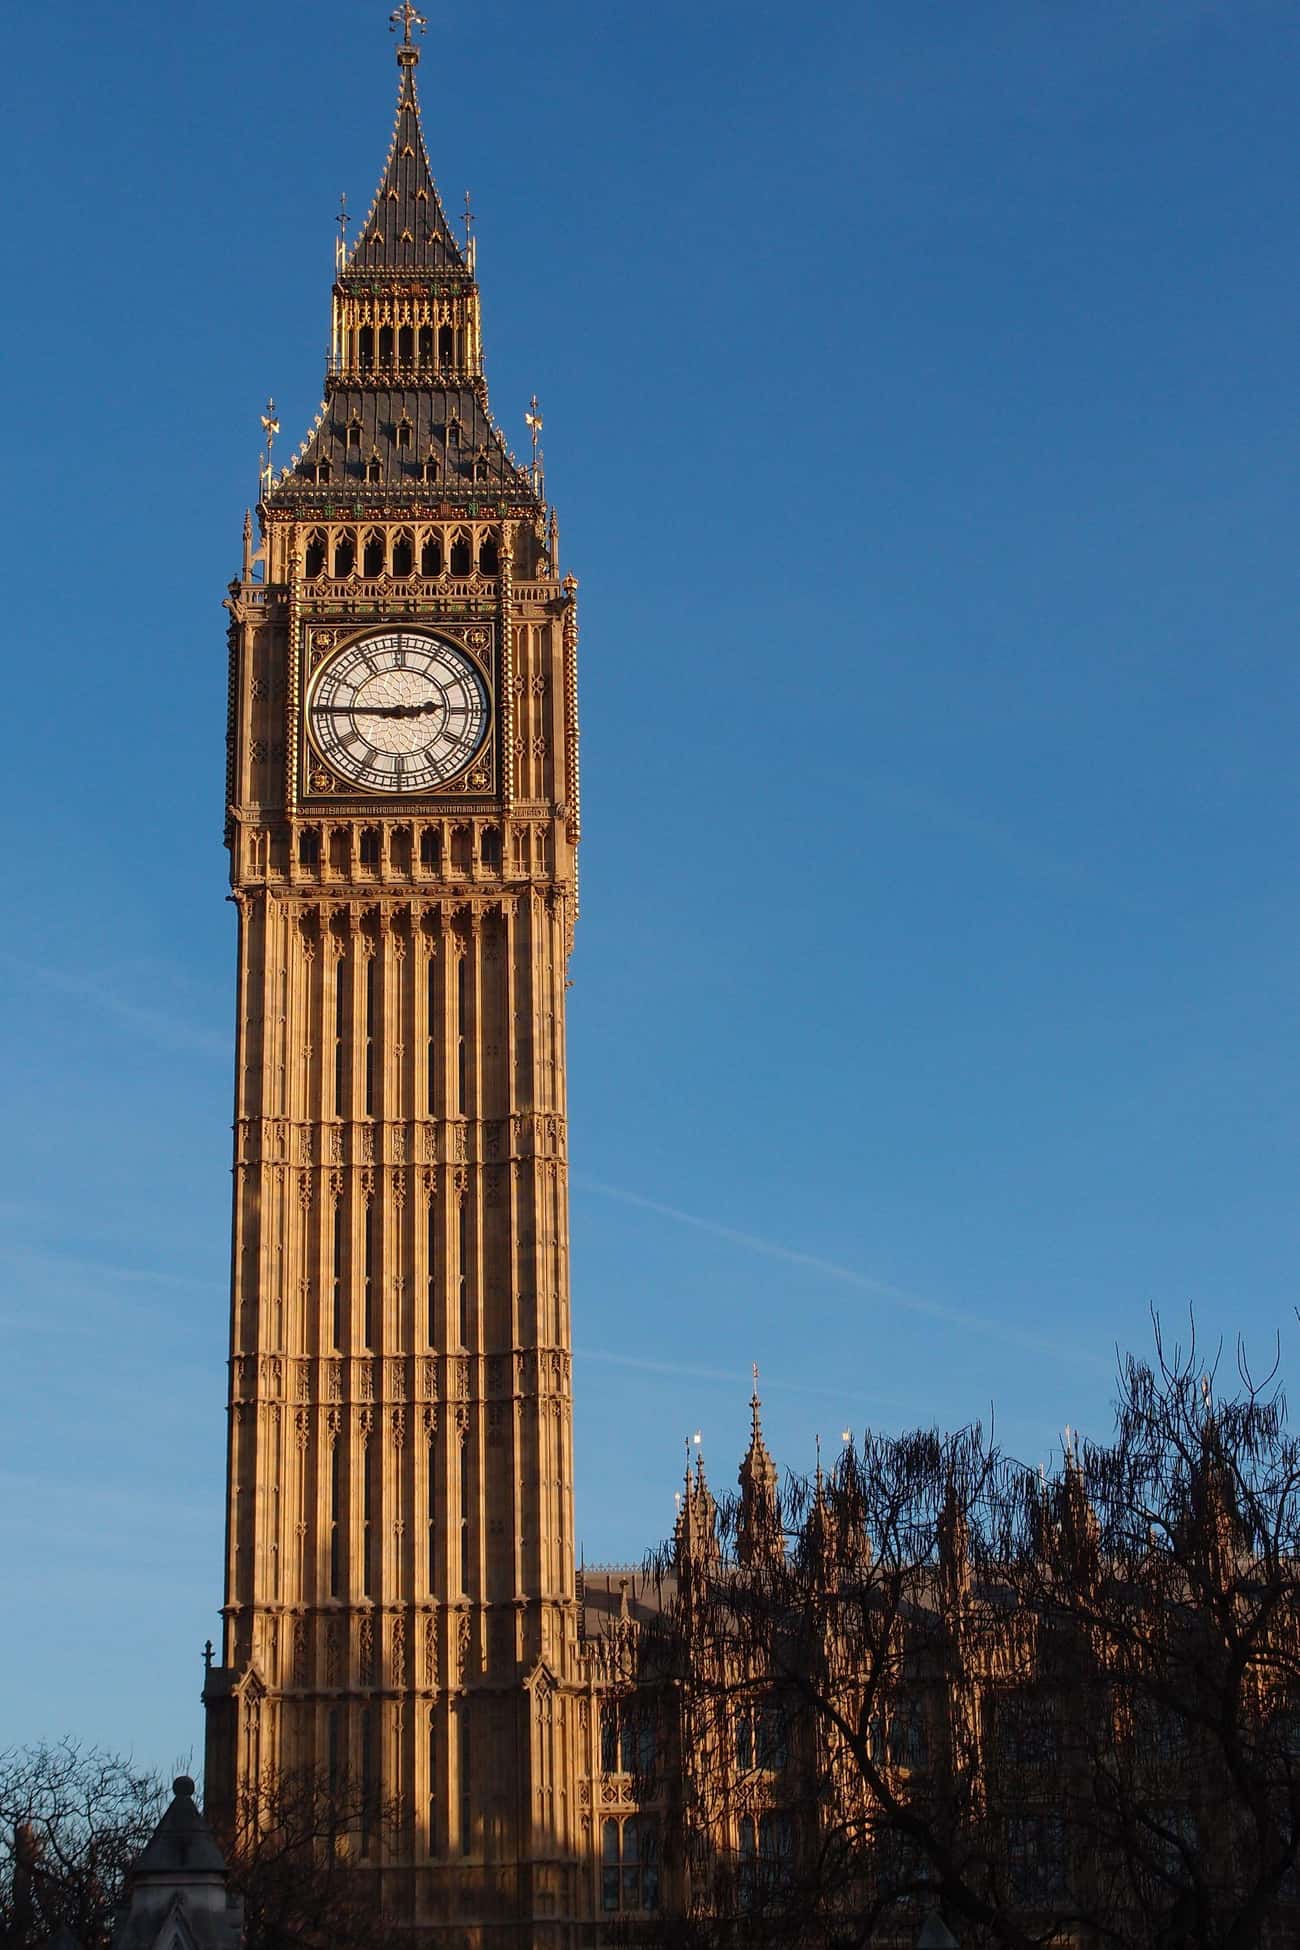 런던의 상징적인 시계탑은 세계에서 가장 잘못 식별된 랜드마크 중 하나입니다. 종종 &quot; 빅 벤 &quot; 이라고 불리지만 시계탑 자체는 엘리자베스 2세 여왕의 이름을 따서 엘리자베스 타워로 명명되었습니다. (다이아몬드 희년 이전에 새 이름을 받았을 때 이 탑은 단순히 Great Clock 이라고 불렸습니다 .)

&quot;빅 벤&quot;이라는 이름은 실제로 모든 도시가 들을 수 있도록 매시 종소리를 울리는 시계 내부의 거대한 13톤 종을 가리킵니다. 이 종은 1834년 화재 이후 의회 재건을 감독한 벤자민 홀 경의 이름을 따서 별명을 얻었을 가능성이 큽니다. 프로젝트 기간 동안 최초의 작업 위원인 그의 이름은 종 외부에 새겨져 있습니다. 

그러나 &quot;빅 벤&quot;이라는 용어가 시계 자체가 아니라 타워 내부의 종을 가리키는 것임을 아는 사람들조차도 때때로 그것이 19세기 챔피언 권투 선수인 Ben Caunt의 이름을 따서 명명되었다고 믿습니다. 그러나 1856년 런던 신문에 실린 뉴스 기사는 문제를 해결합니다.

우리는 모든 종이 울리기 전에 세례를 받는다고 믿습니다... 그리고 이 경우 종의 왕인 벤자민 홀(Benjamin Hall) 경을 기리기 위해 &quot;빅 벤&quot;이라고 부를 것을 제안했습니다. 사무실이 캐스팅되었습니다.